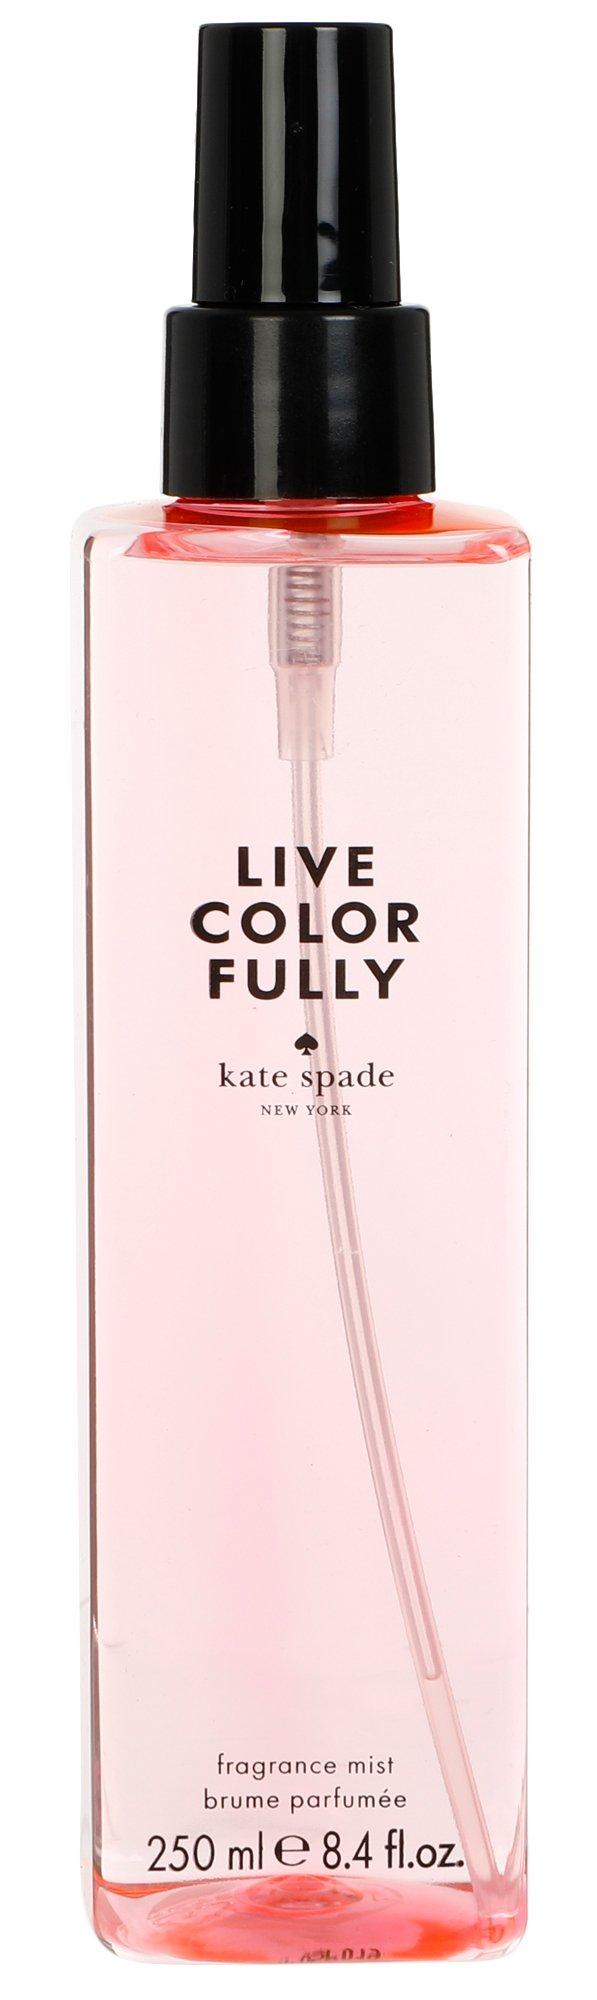 8.4 oz Live Color Fully For Her Fragrance Mist